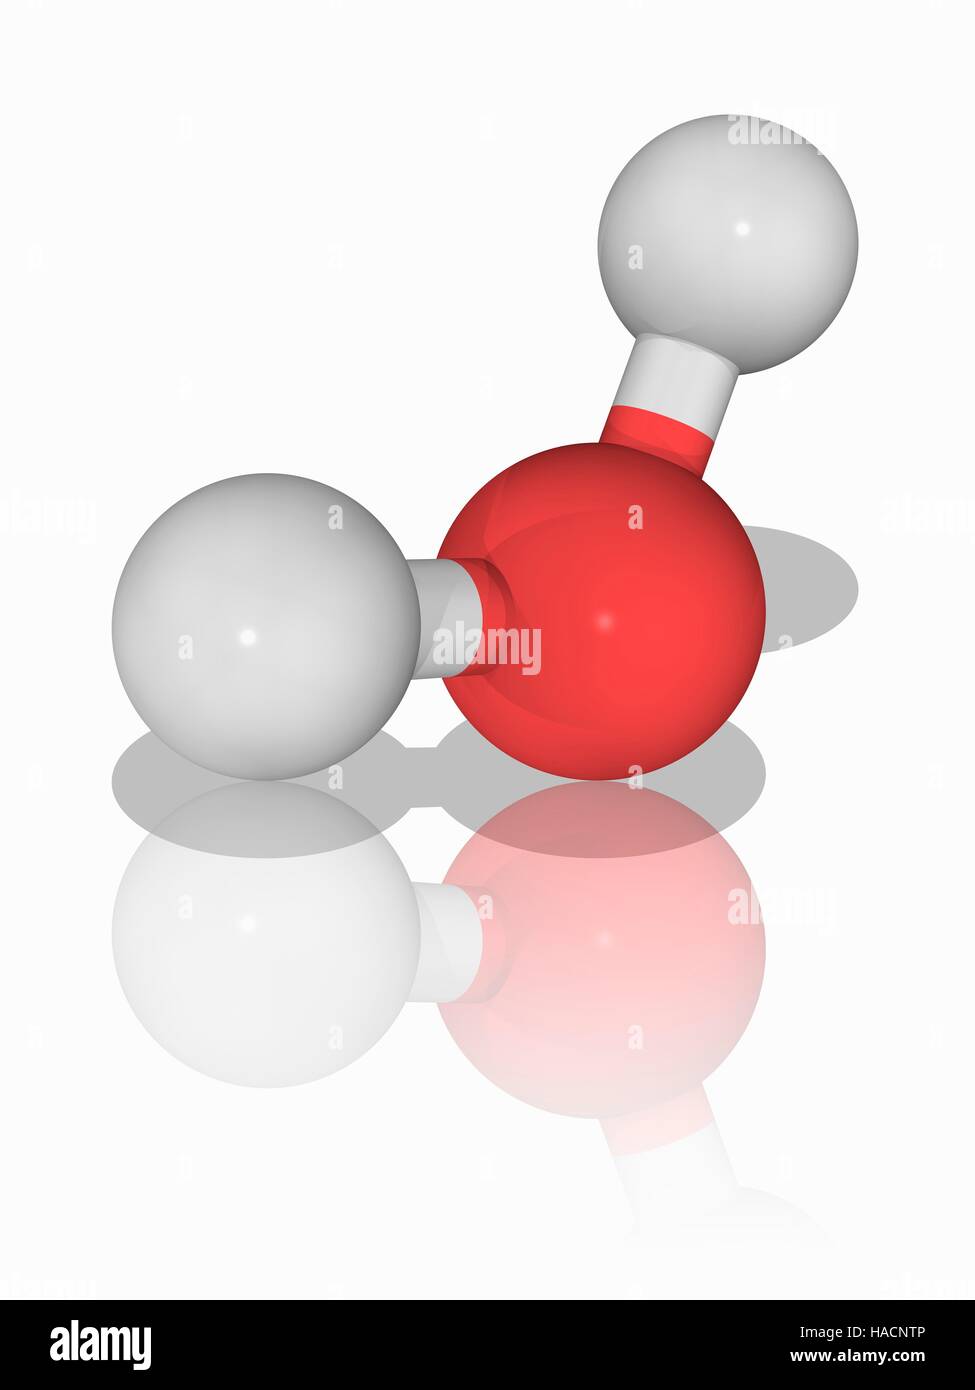 Acqua (H2.O), modello molecolare. Questo liquido è vitale per la vita. Acqua copre il 70 percento della superficie della terra. Gli atomi sono rappresentati da sfere e sono codificati a colori: idrogeno (bianco) e ossigeno (rosso). Illustrazione. Foto Stock